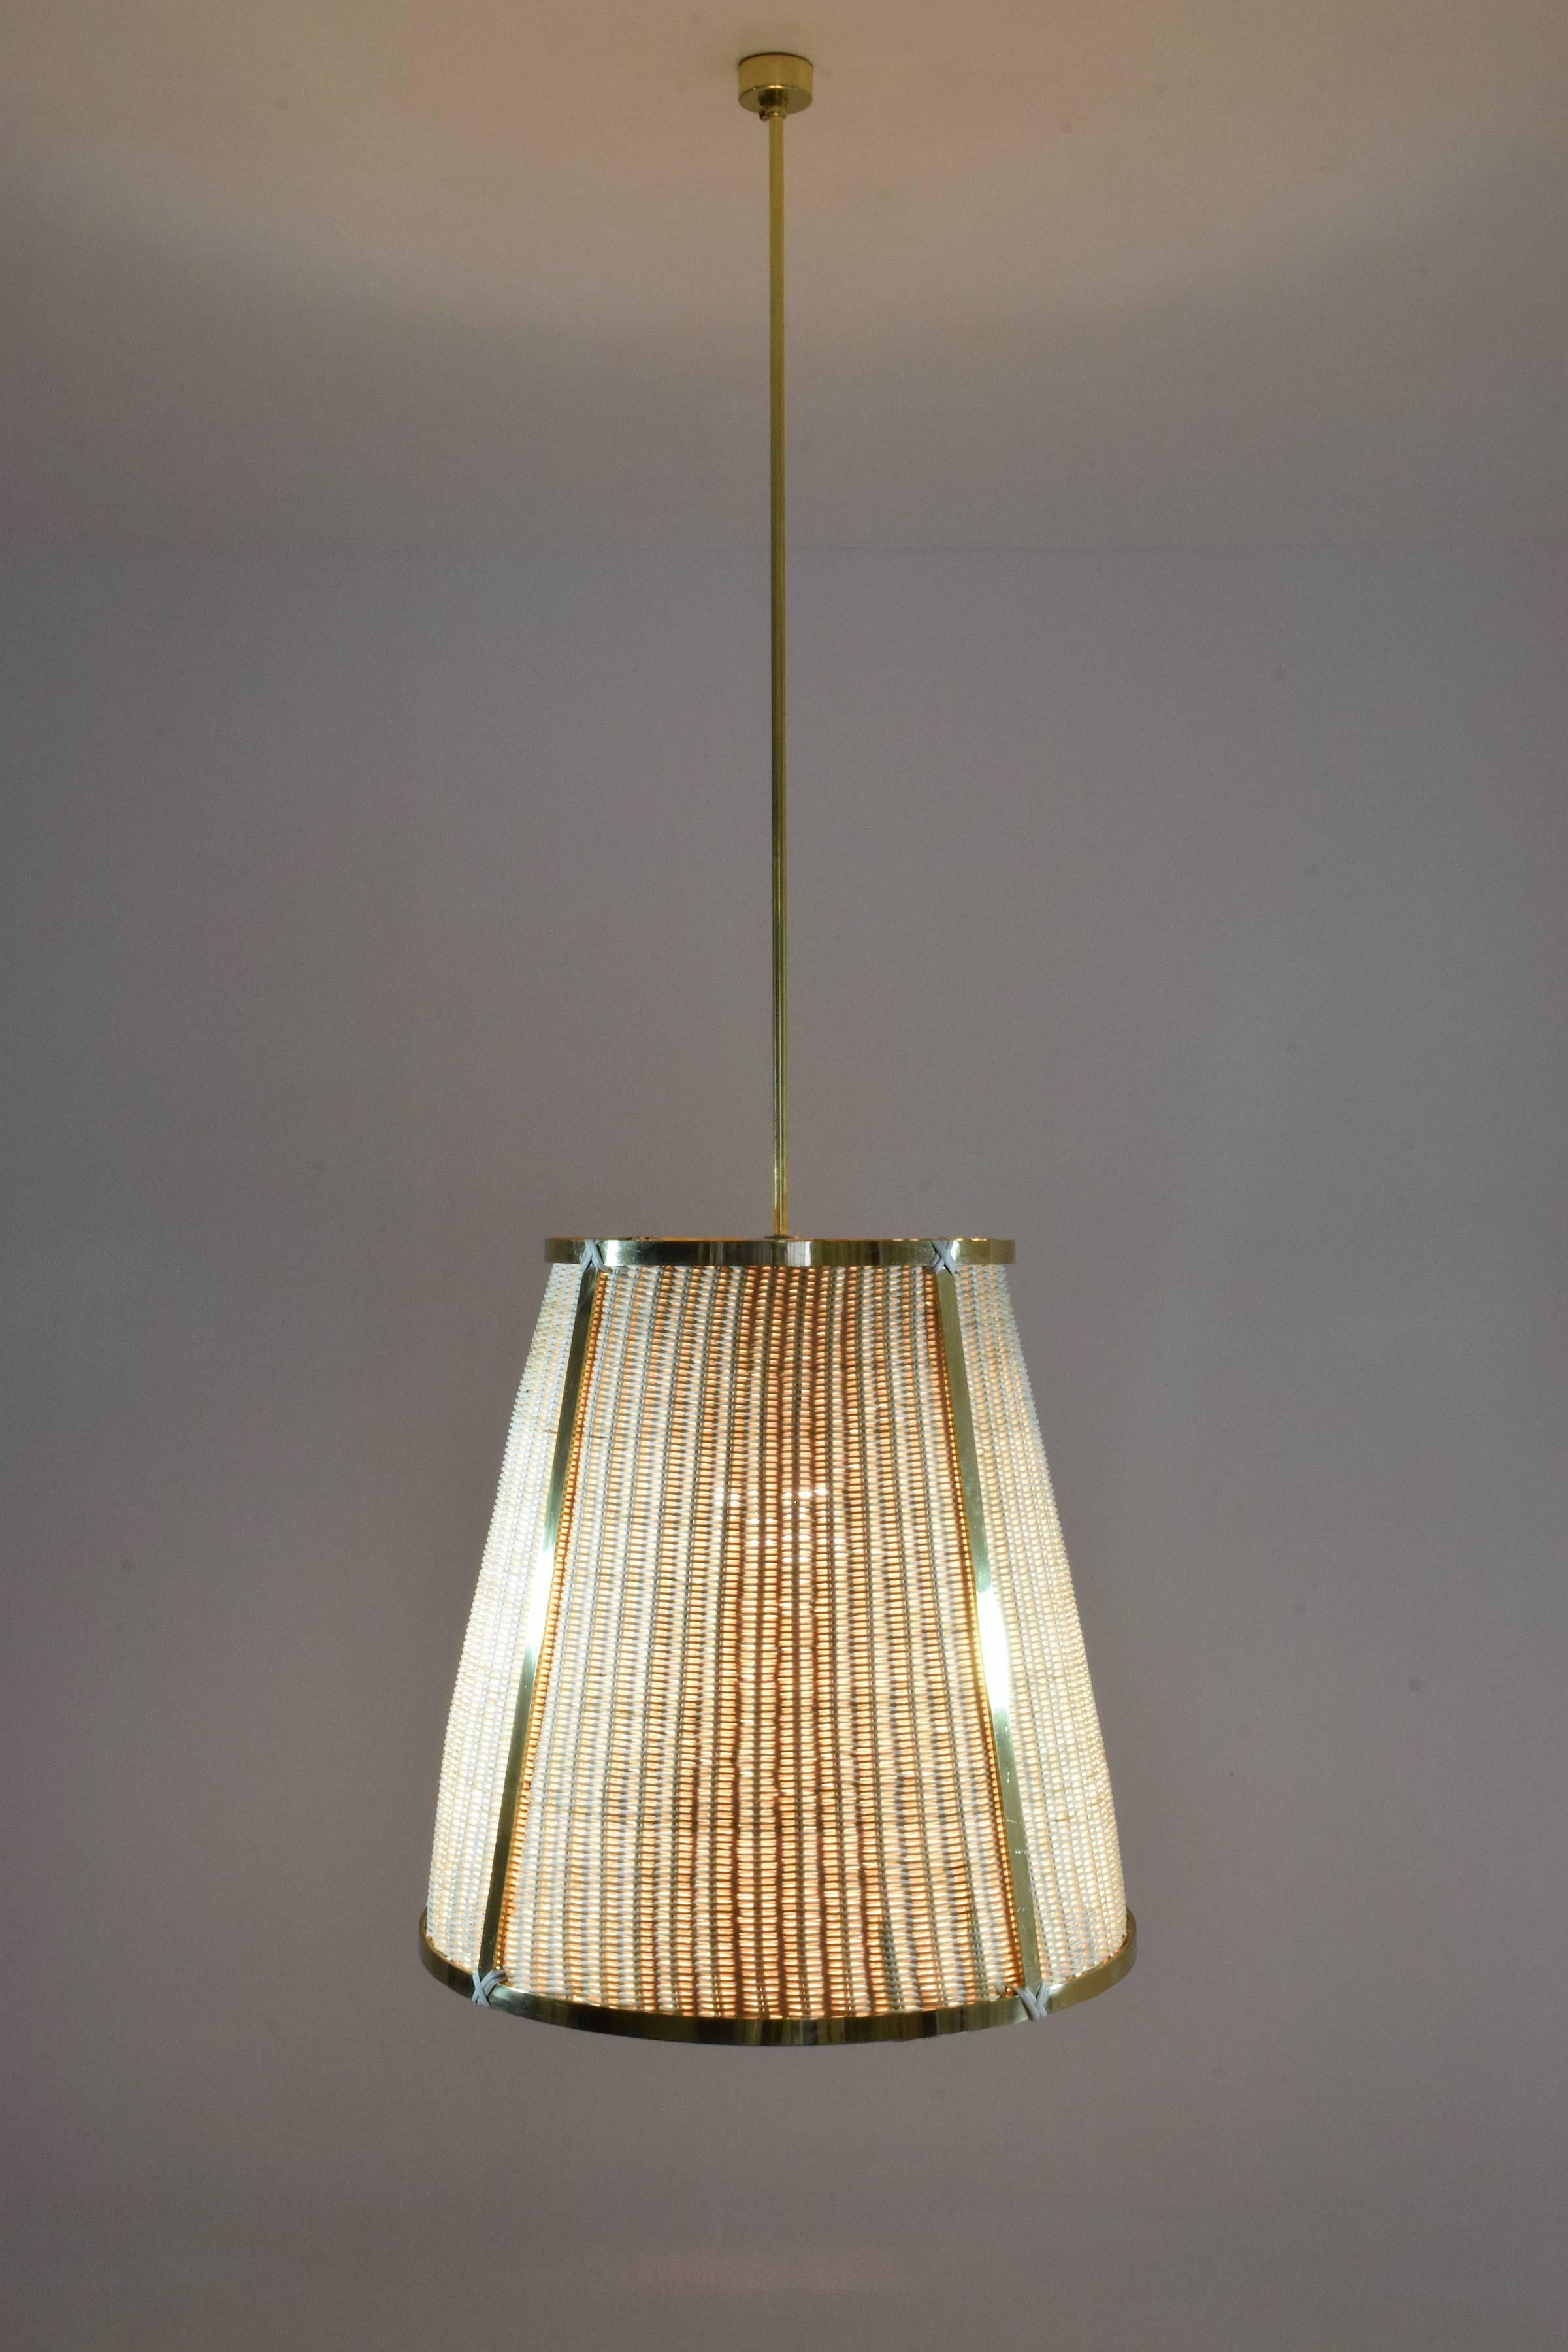 Le luminaire suspendu contemporain sur mesure Caeli-S est doté d'une structure en laiton fabriquée à la main par des experts et d'un abat-jour en rotin tressé à la main. Cette pièce crée une ambiance chaleureuse et accueillante, parfaite pour les